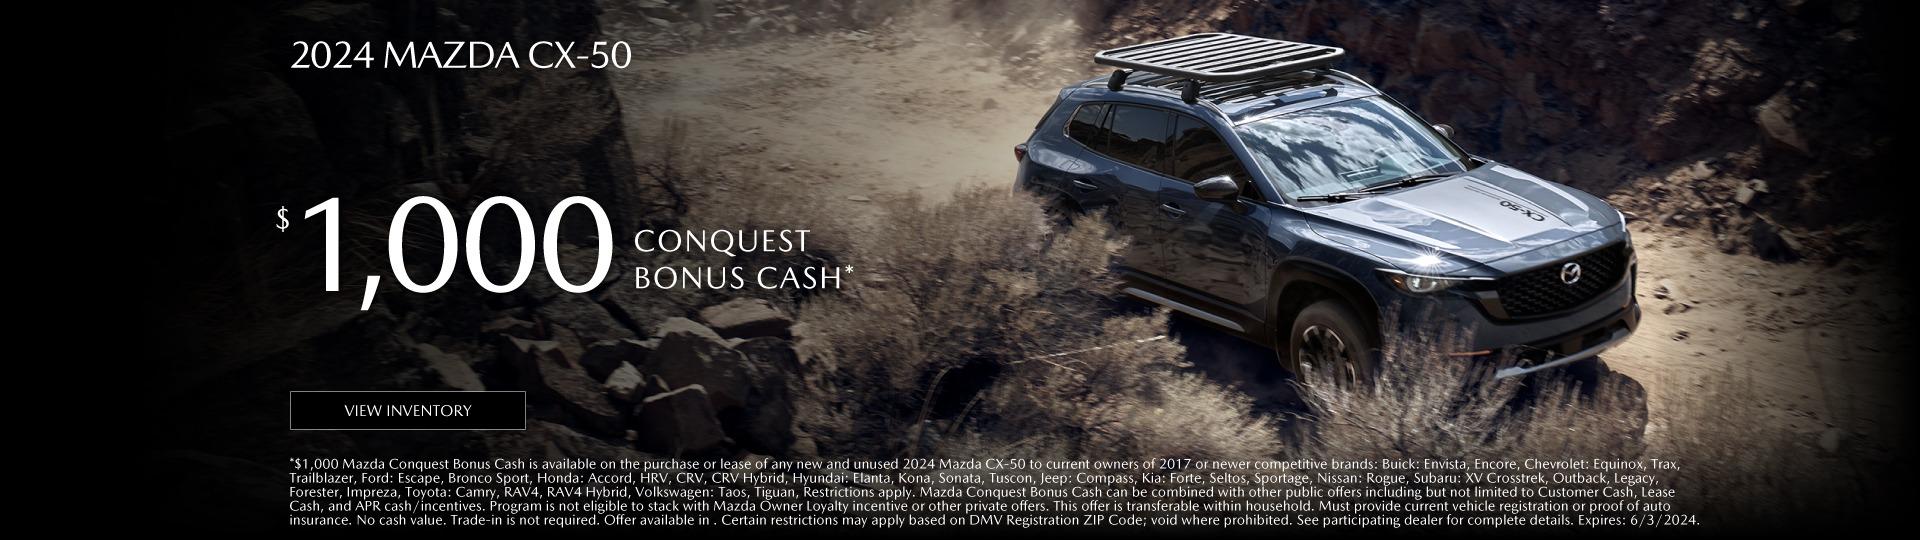 2023 Mazda  CX-50 $1,000 conquest bonus cash